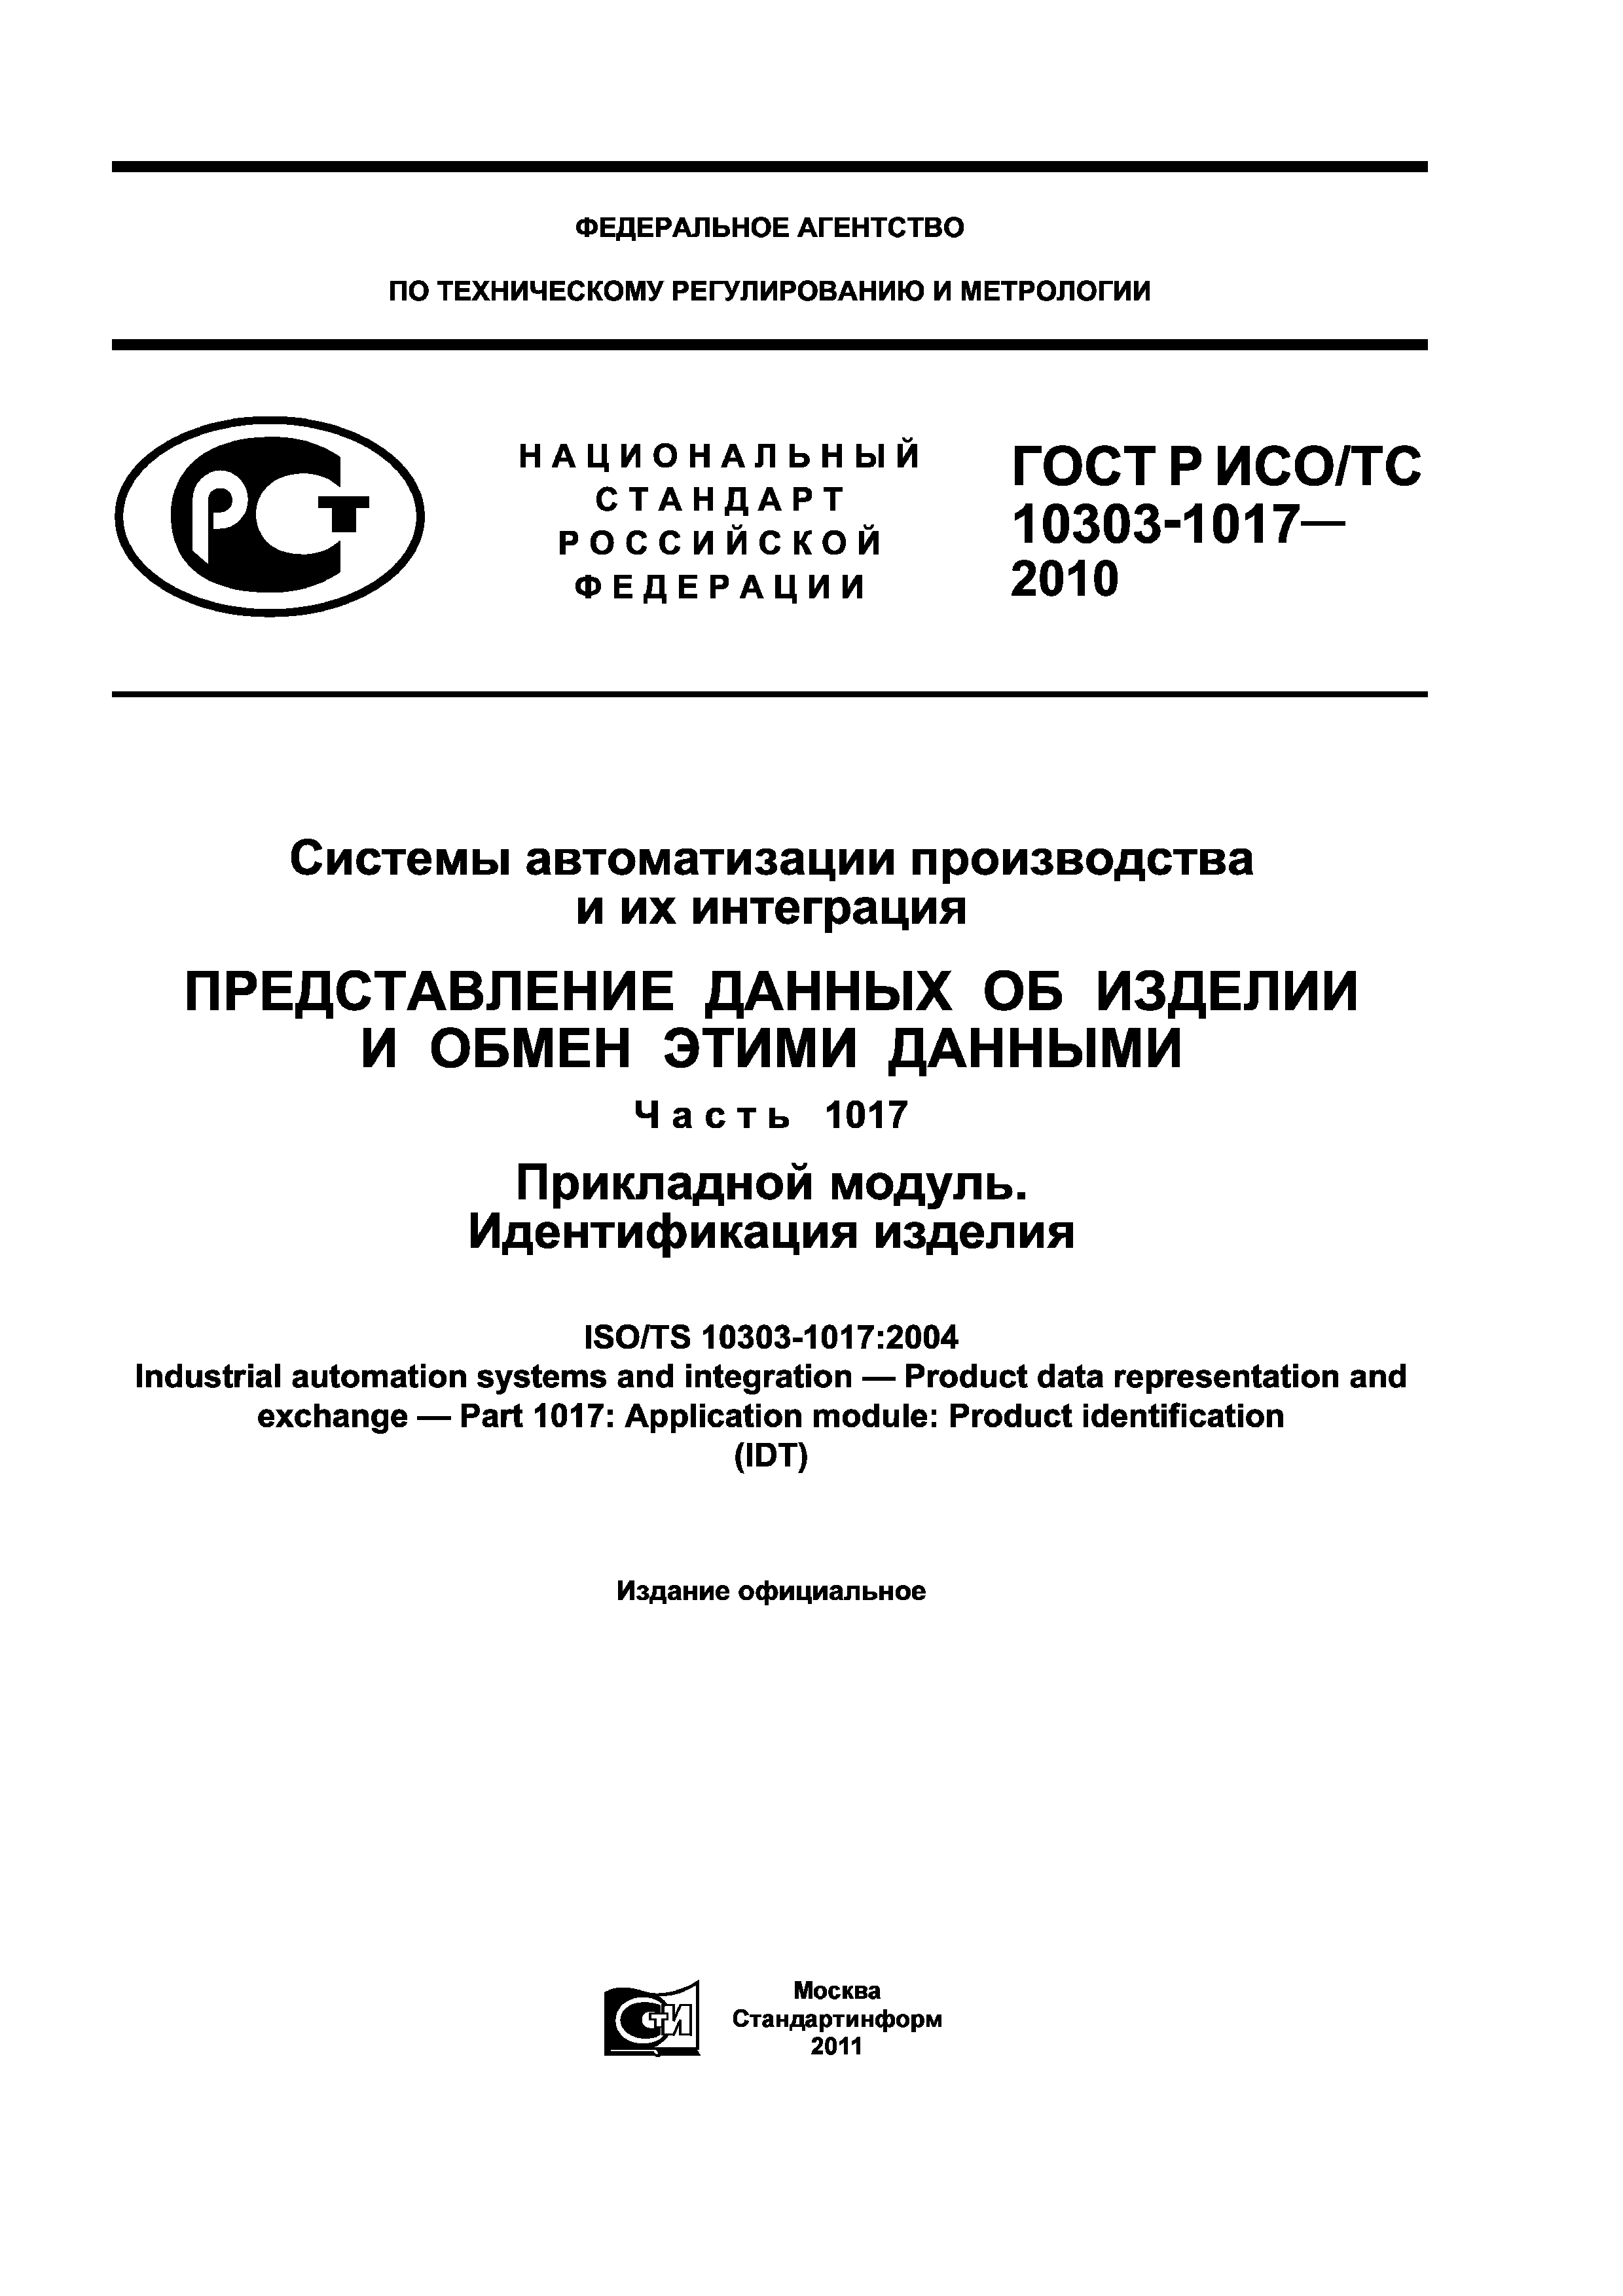 ГОСТ Р ИСО/ТС 10303-1017-2010